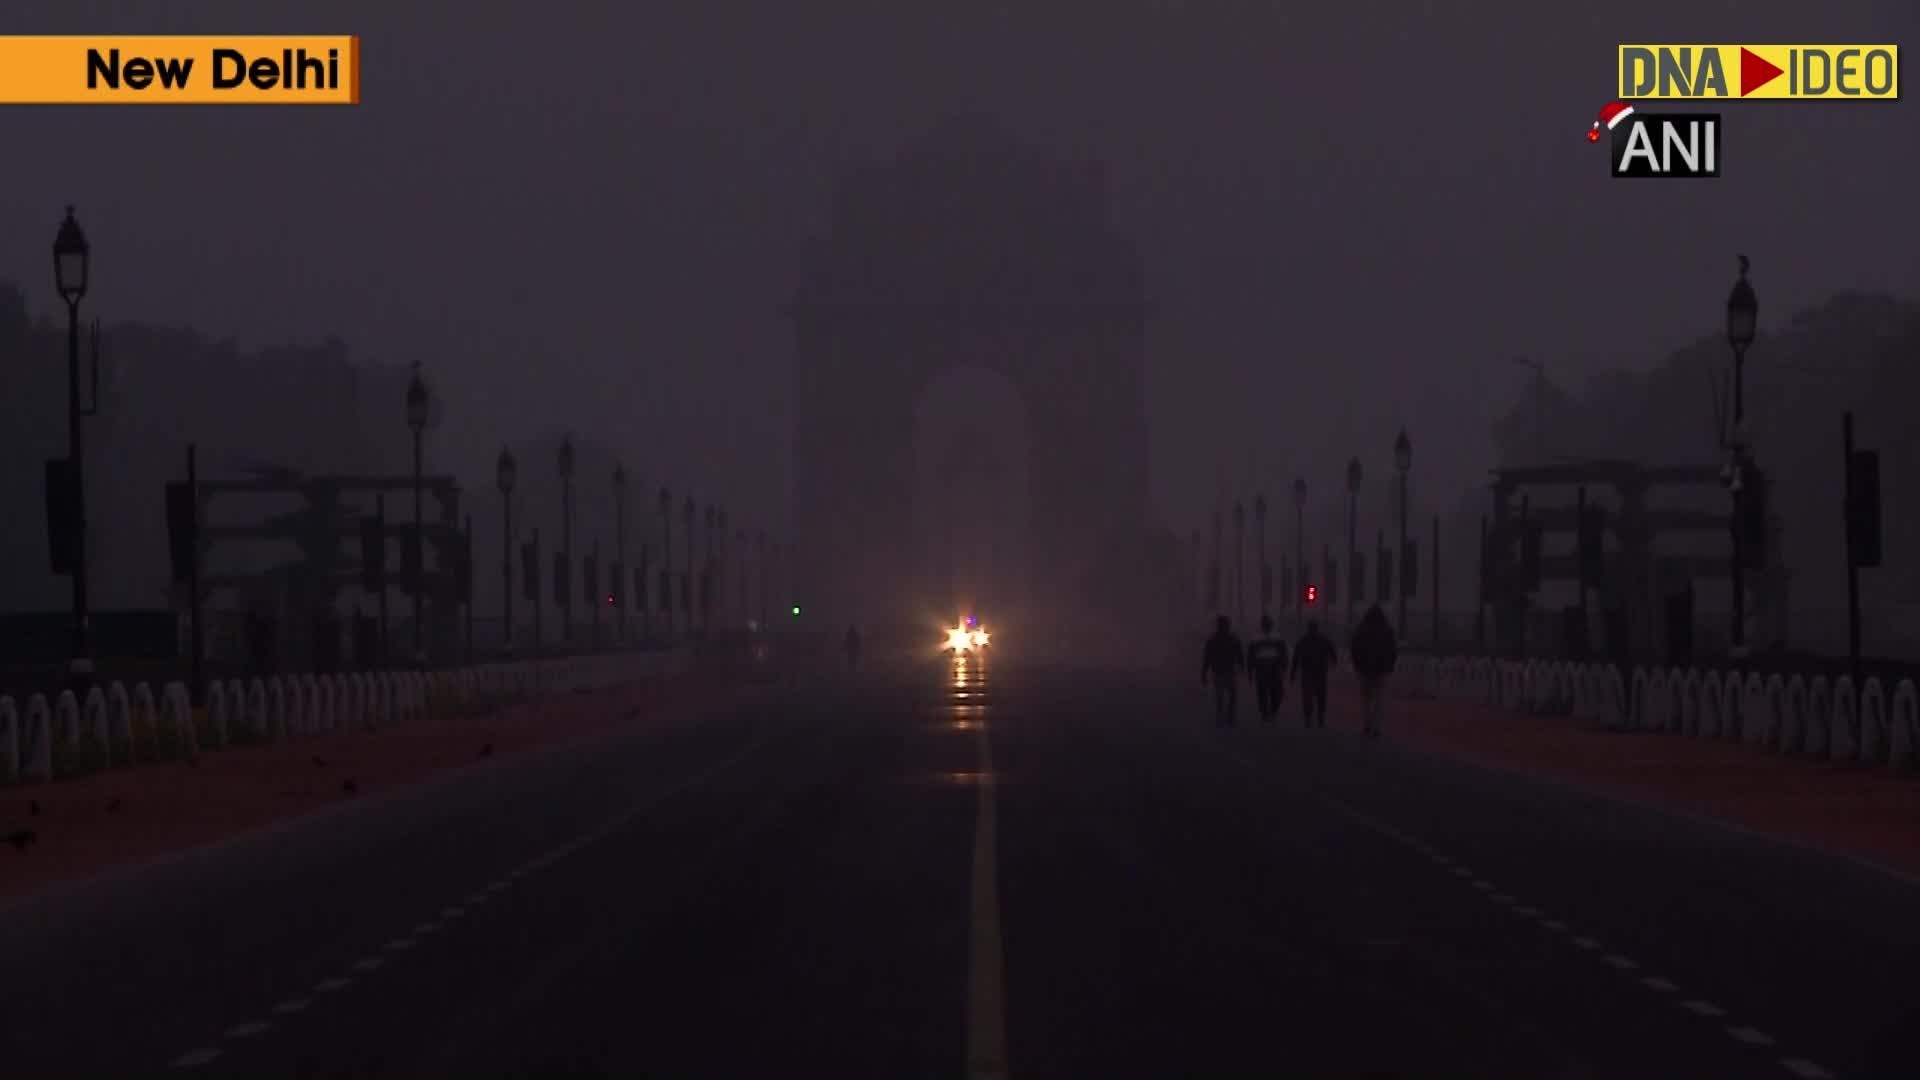 Delhi witnesses foggy Christmas morning